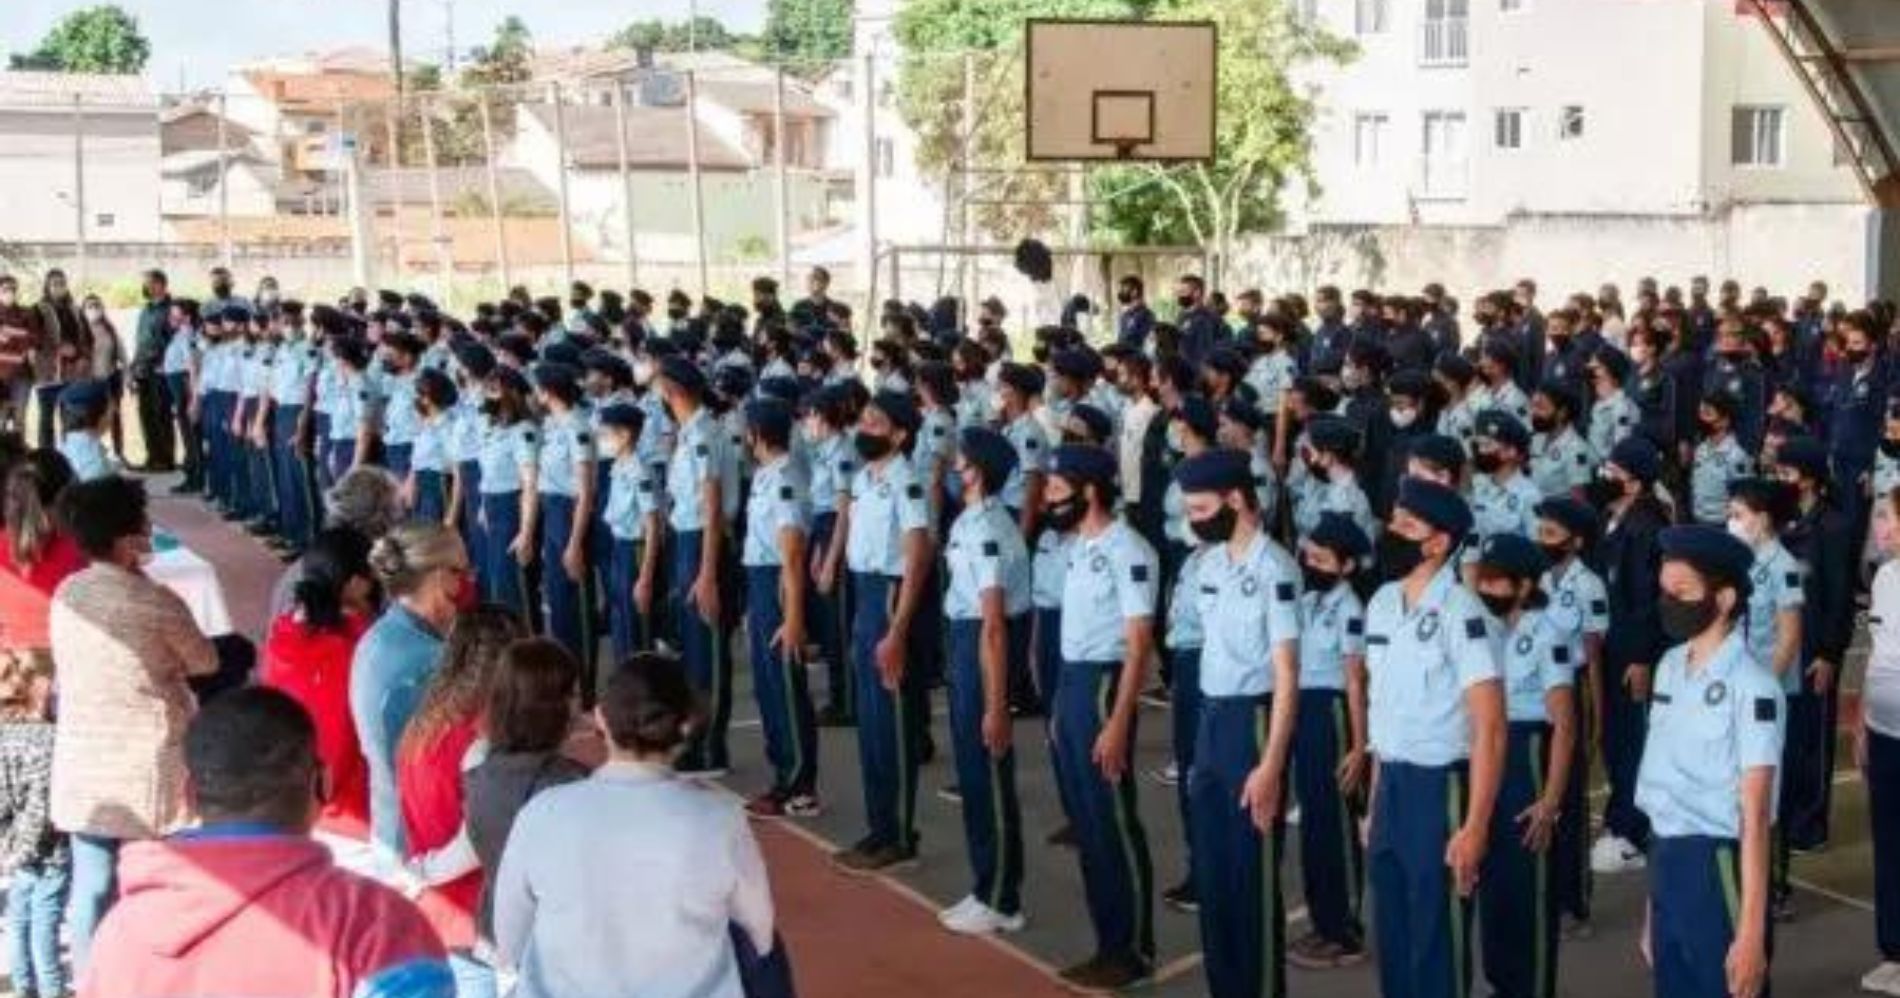 127 escolas paranaenses participam de consulta pública sobre o modelo cívico-militar esta semana